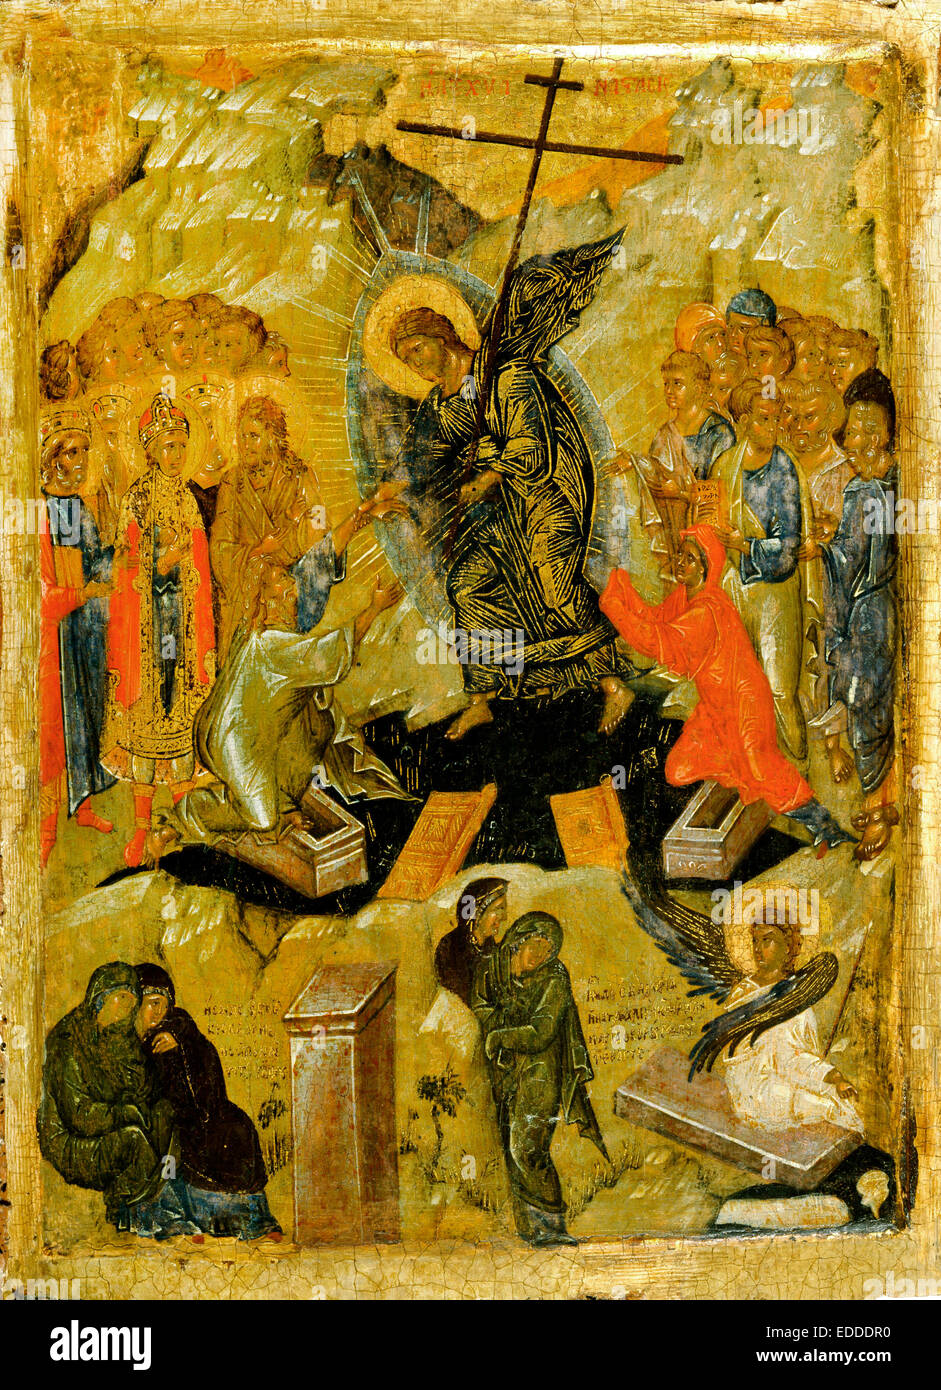 Griego, la resurrección de Cristo. Circa 1350-1375. Témpera sobre madera. Museo de Arte Walters, de Baltimore, Estados Unidos. Foto de stock